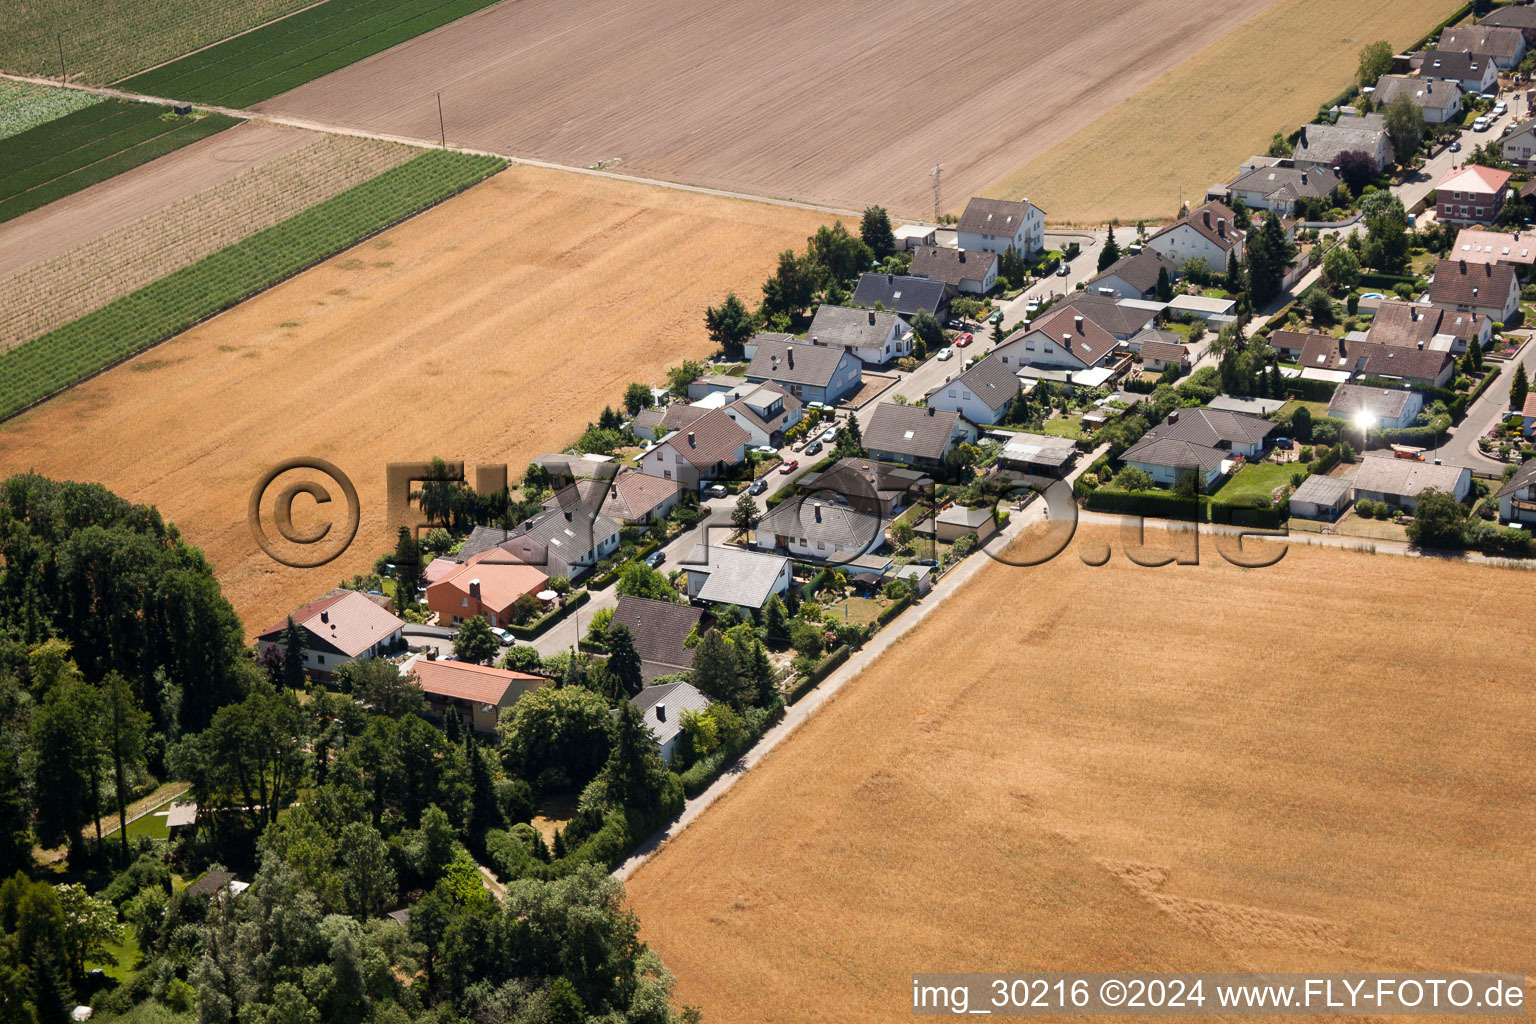 Luftbild von Waldstr in Erlenbach bei Kandel im Bundesland Rheinland-Pfalz, Deutschland